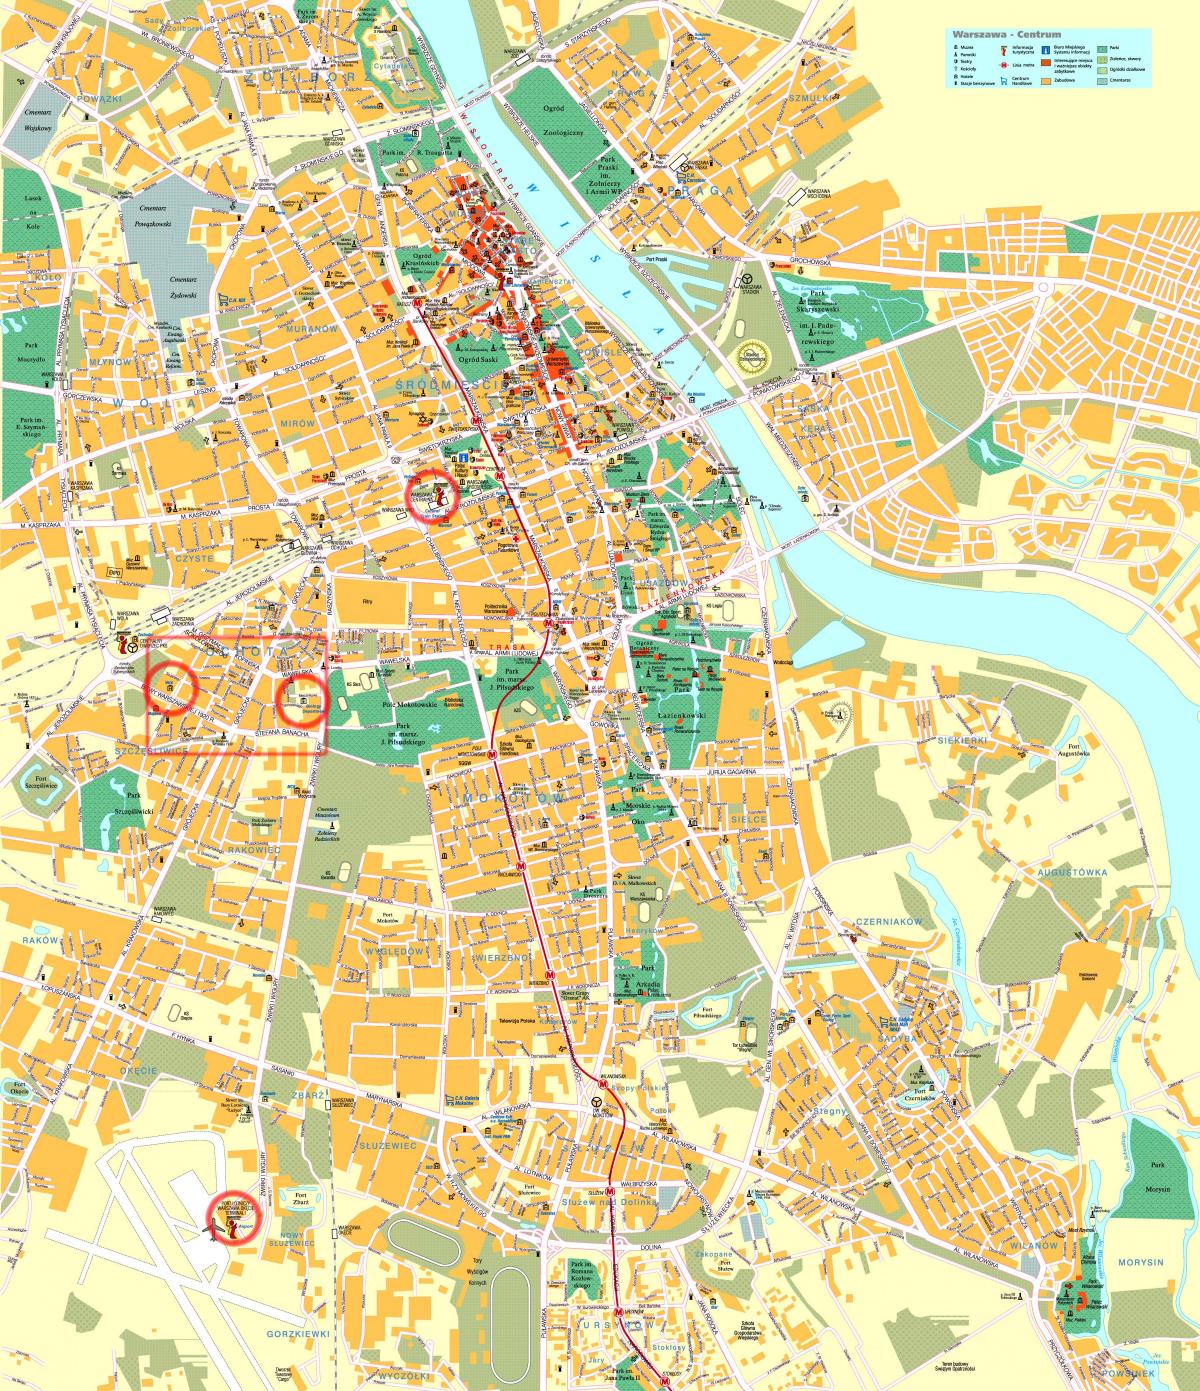 सड़क के नक्शे के वारसा शहर के केंद्र